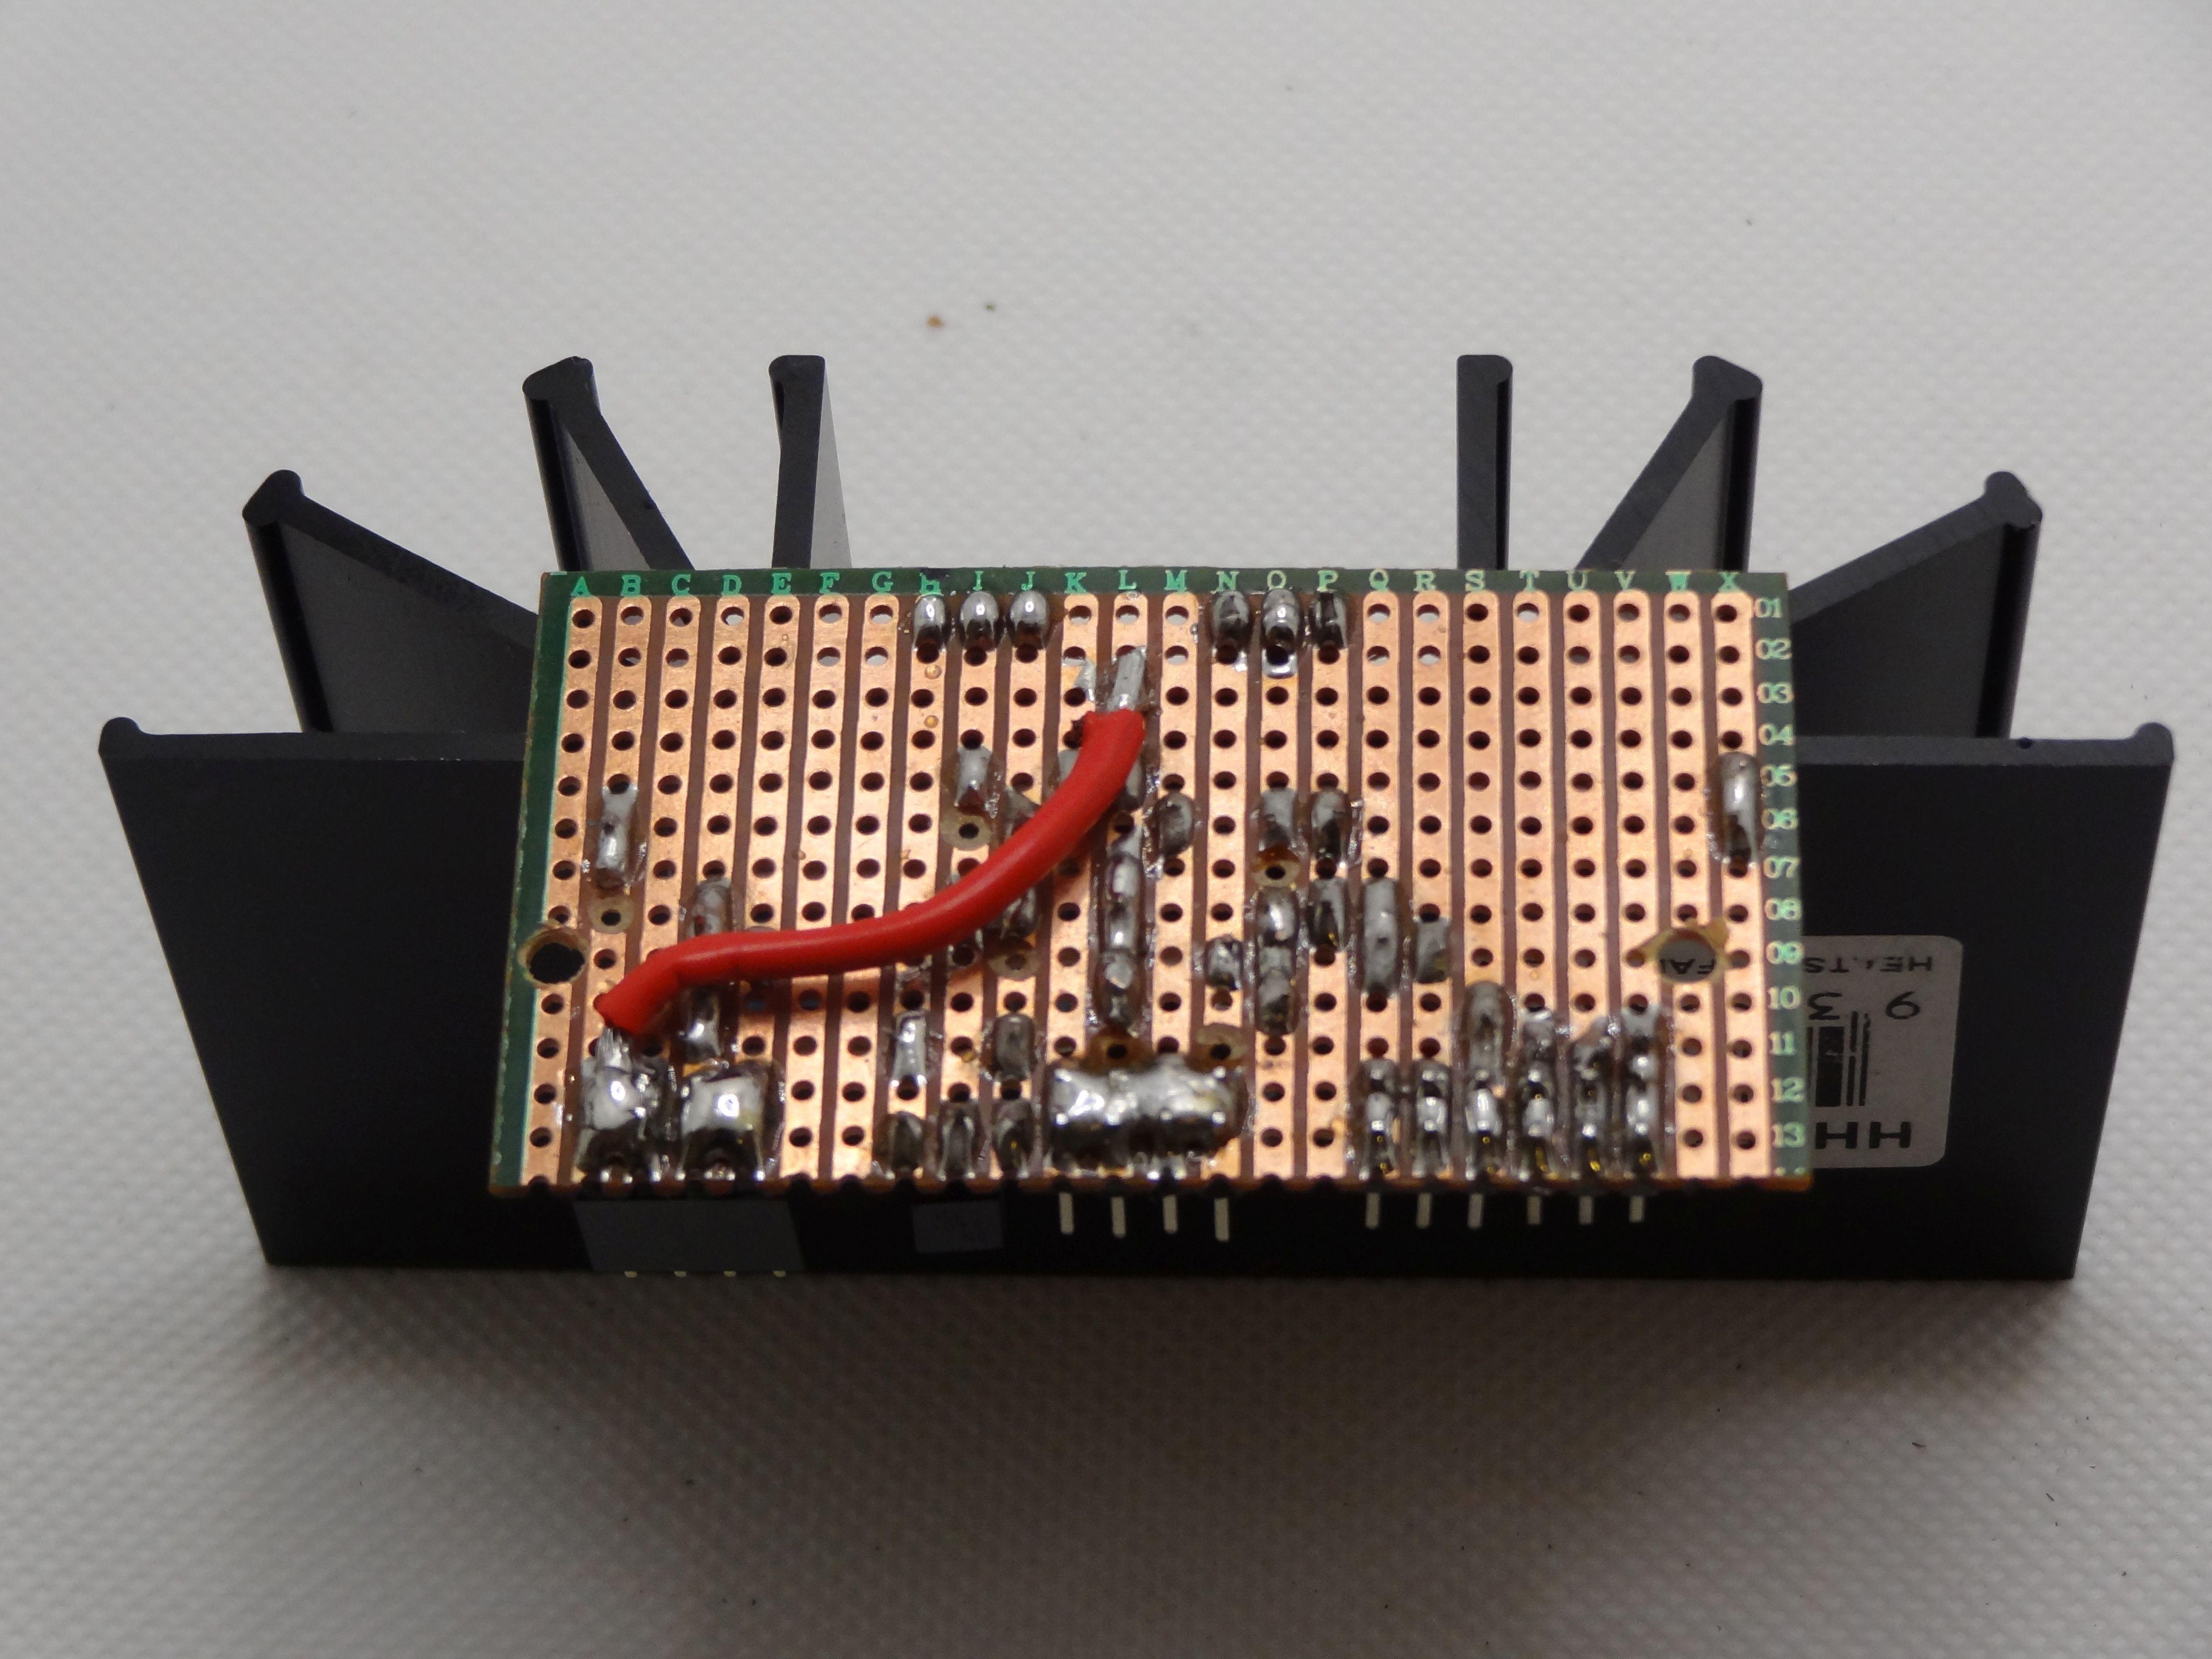 wemos d1 mini - digitalRead true even when switch not activated : r/arduino